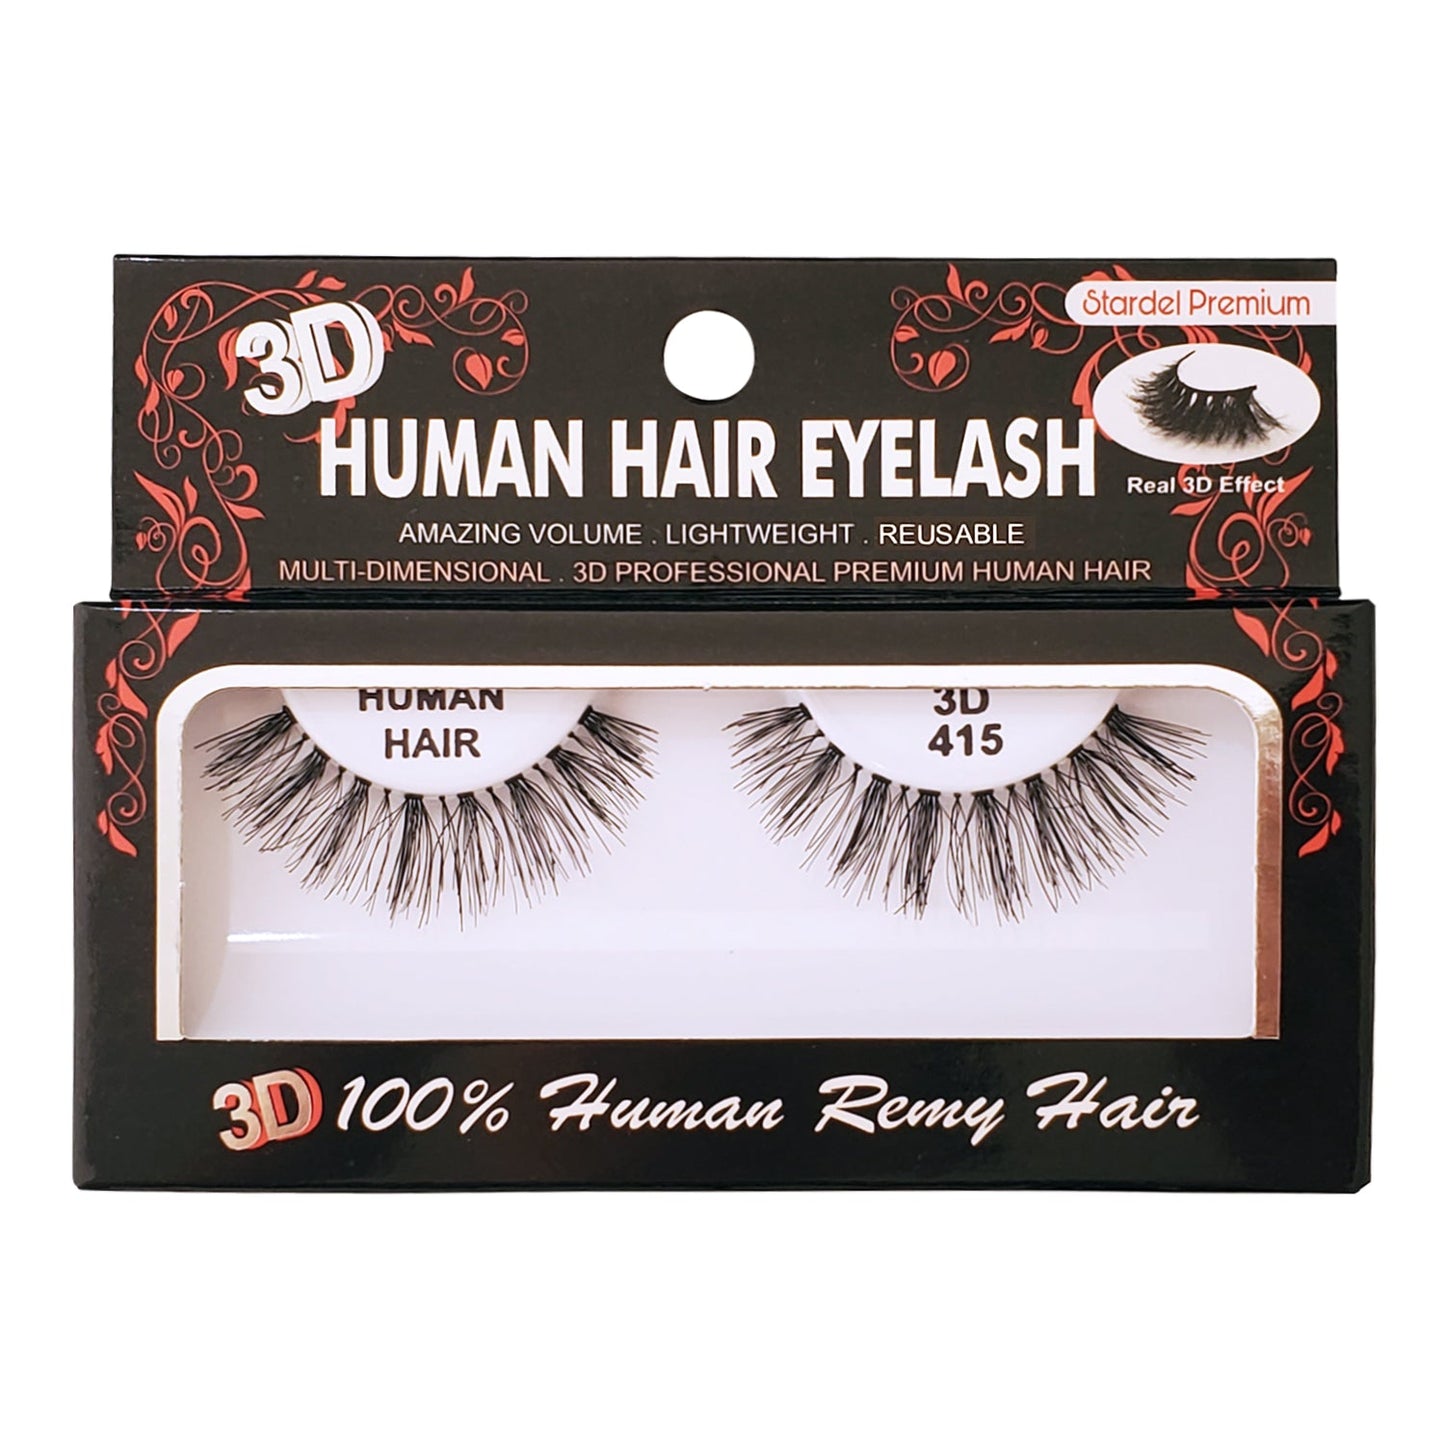 #3D 415 - 100% Human Remy Hair Eyelash